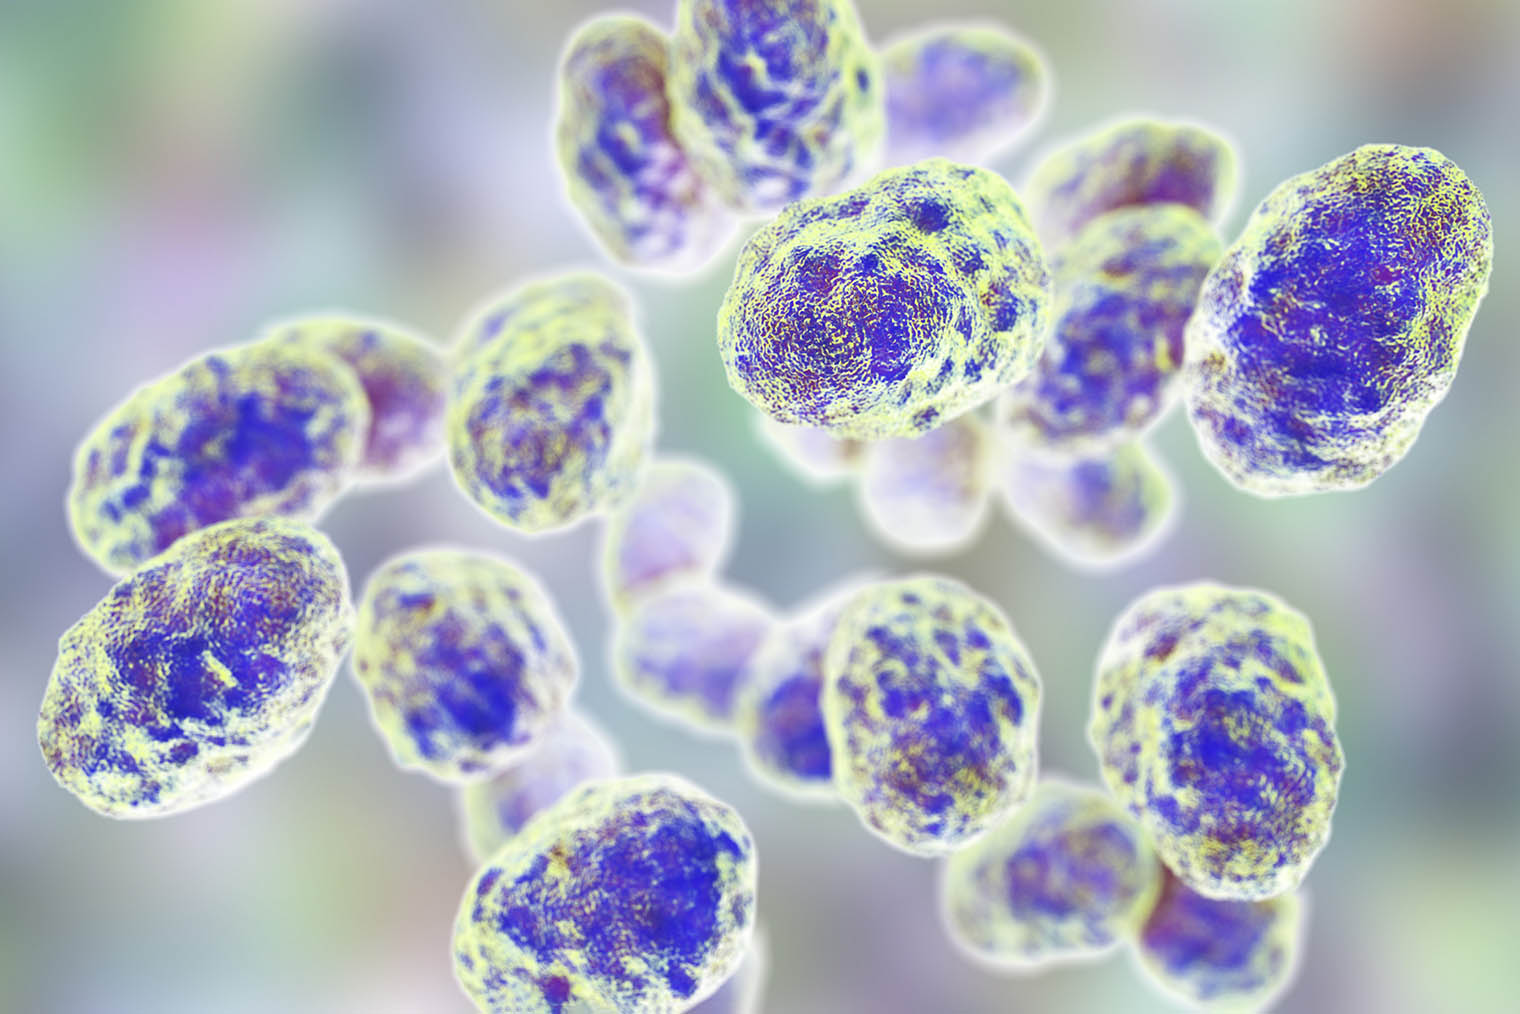 Так выглядят бактерии, вызывающие туляремию. Иллюстрация: Kateryna Kon / Shutterstock / FOTODOM